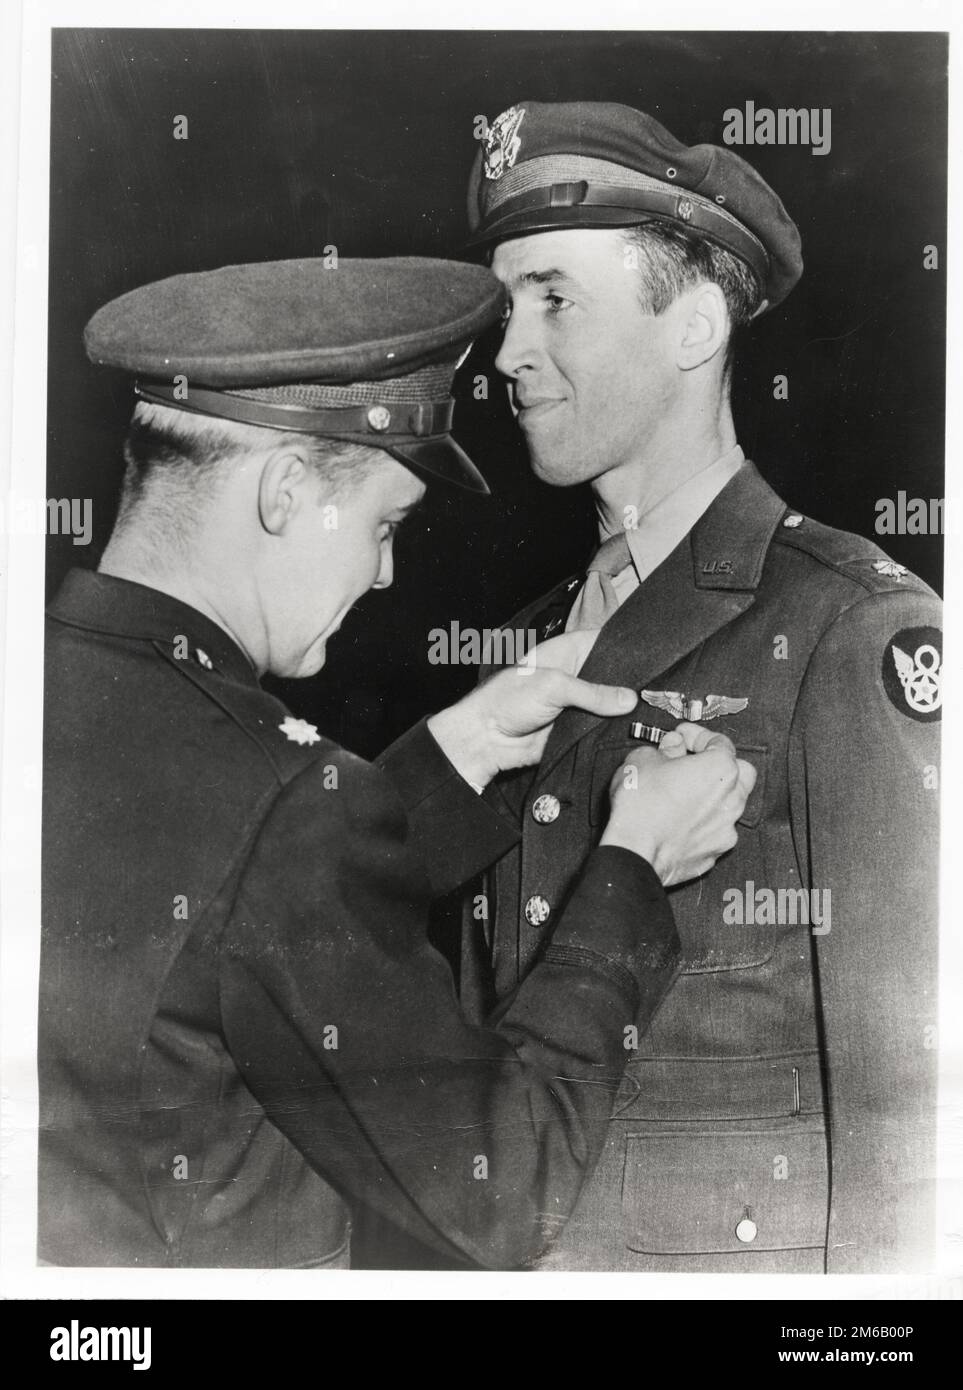 James C. Stewart erhält das Distinguished Flying Cross von LT. Col. Ramsay D. Potts, für einen Bombenangriff auf Brunswick, Deutschland, im Jahr 1944 erhält Major James Jimmy Stewart eine militärische Auszeichnung. Stockfoto